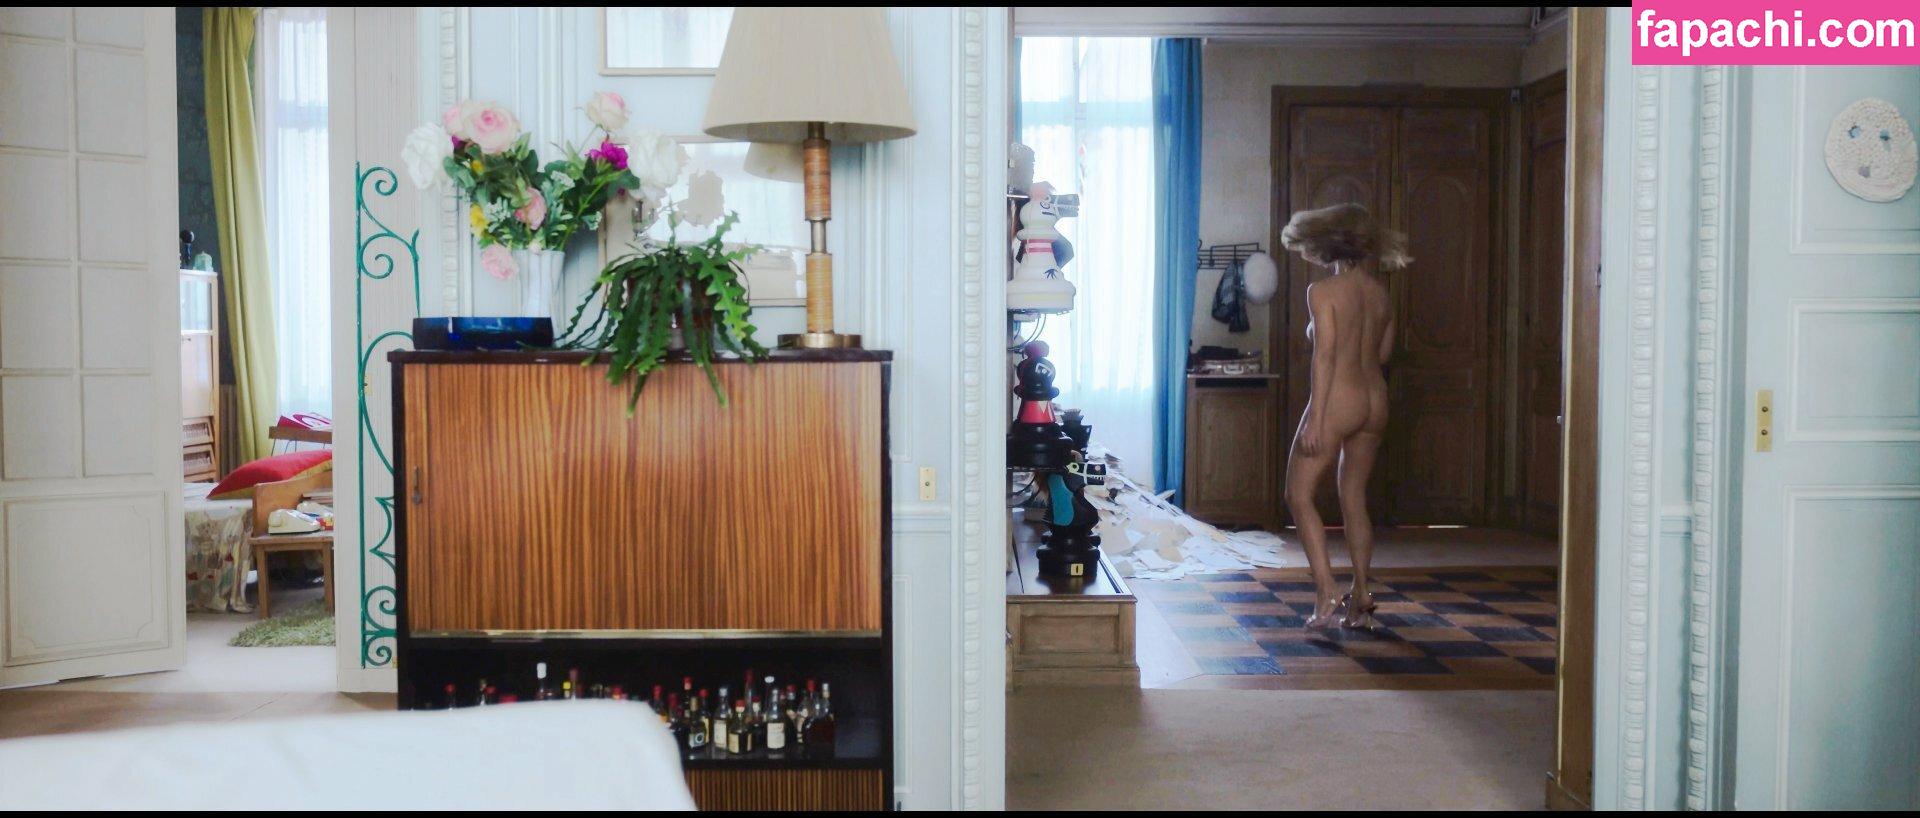 Virginie Efira / efira_virginie leaked nude photo #0013 from OnlyFans/Patreon